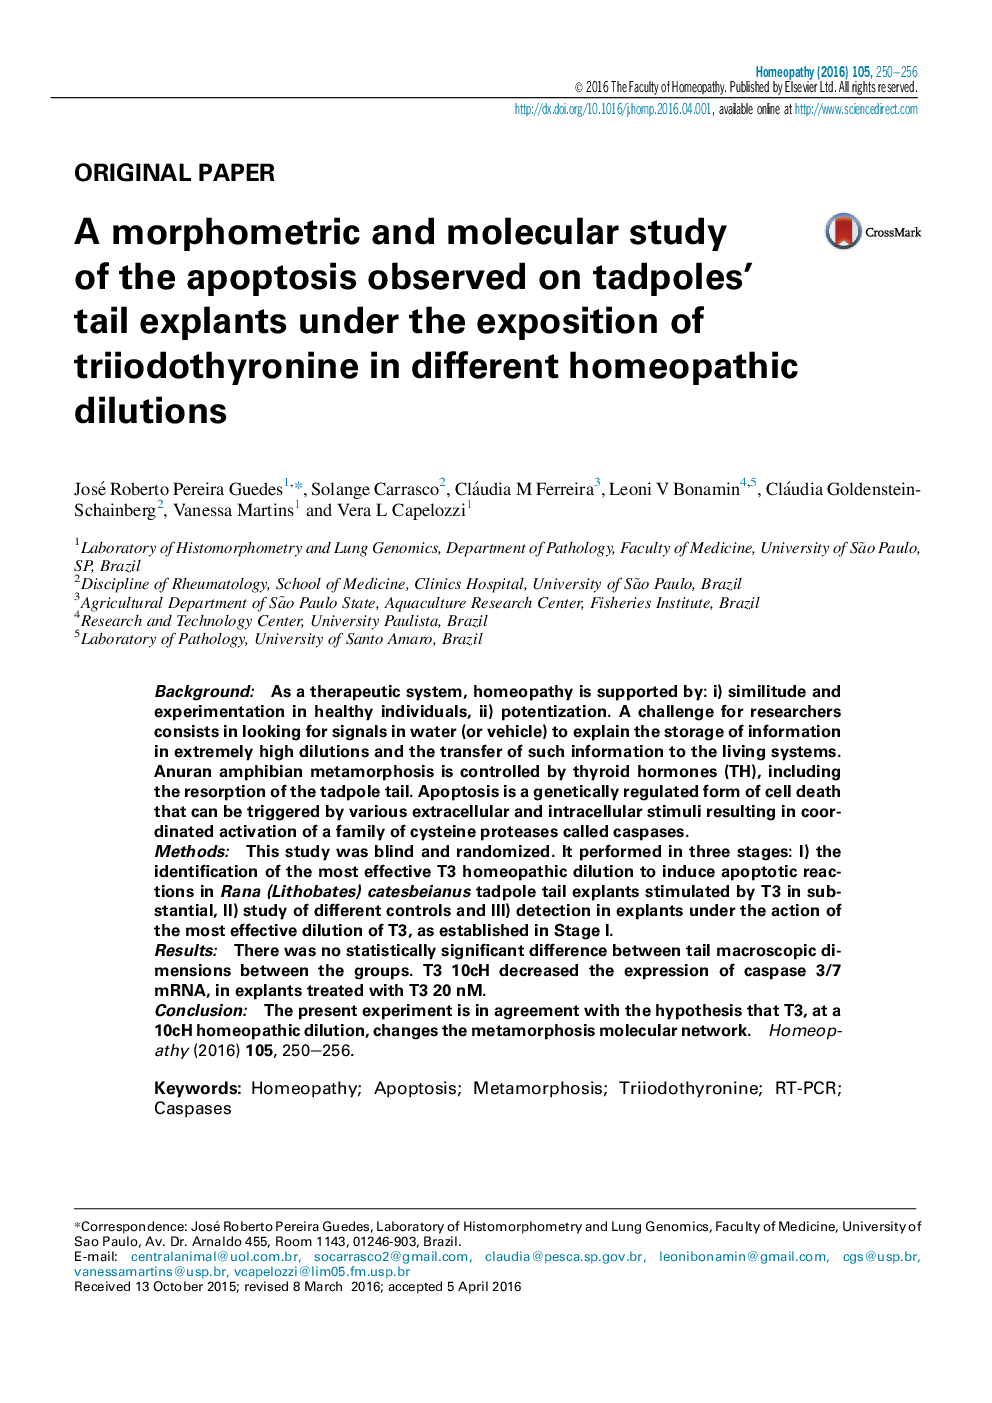 یک مطالعه مورفومتریک و مولکولی از آپوپتوز مشاهده شده در ریزنمونه های دم قورباغه تحت بیان تیریودوتیرونین در رقت های مختلف هومیوپاتی 